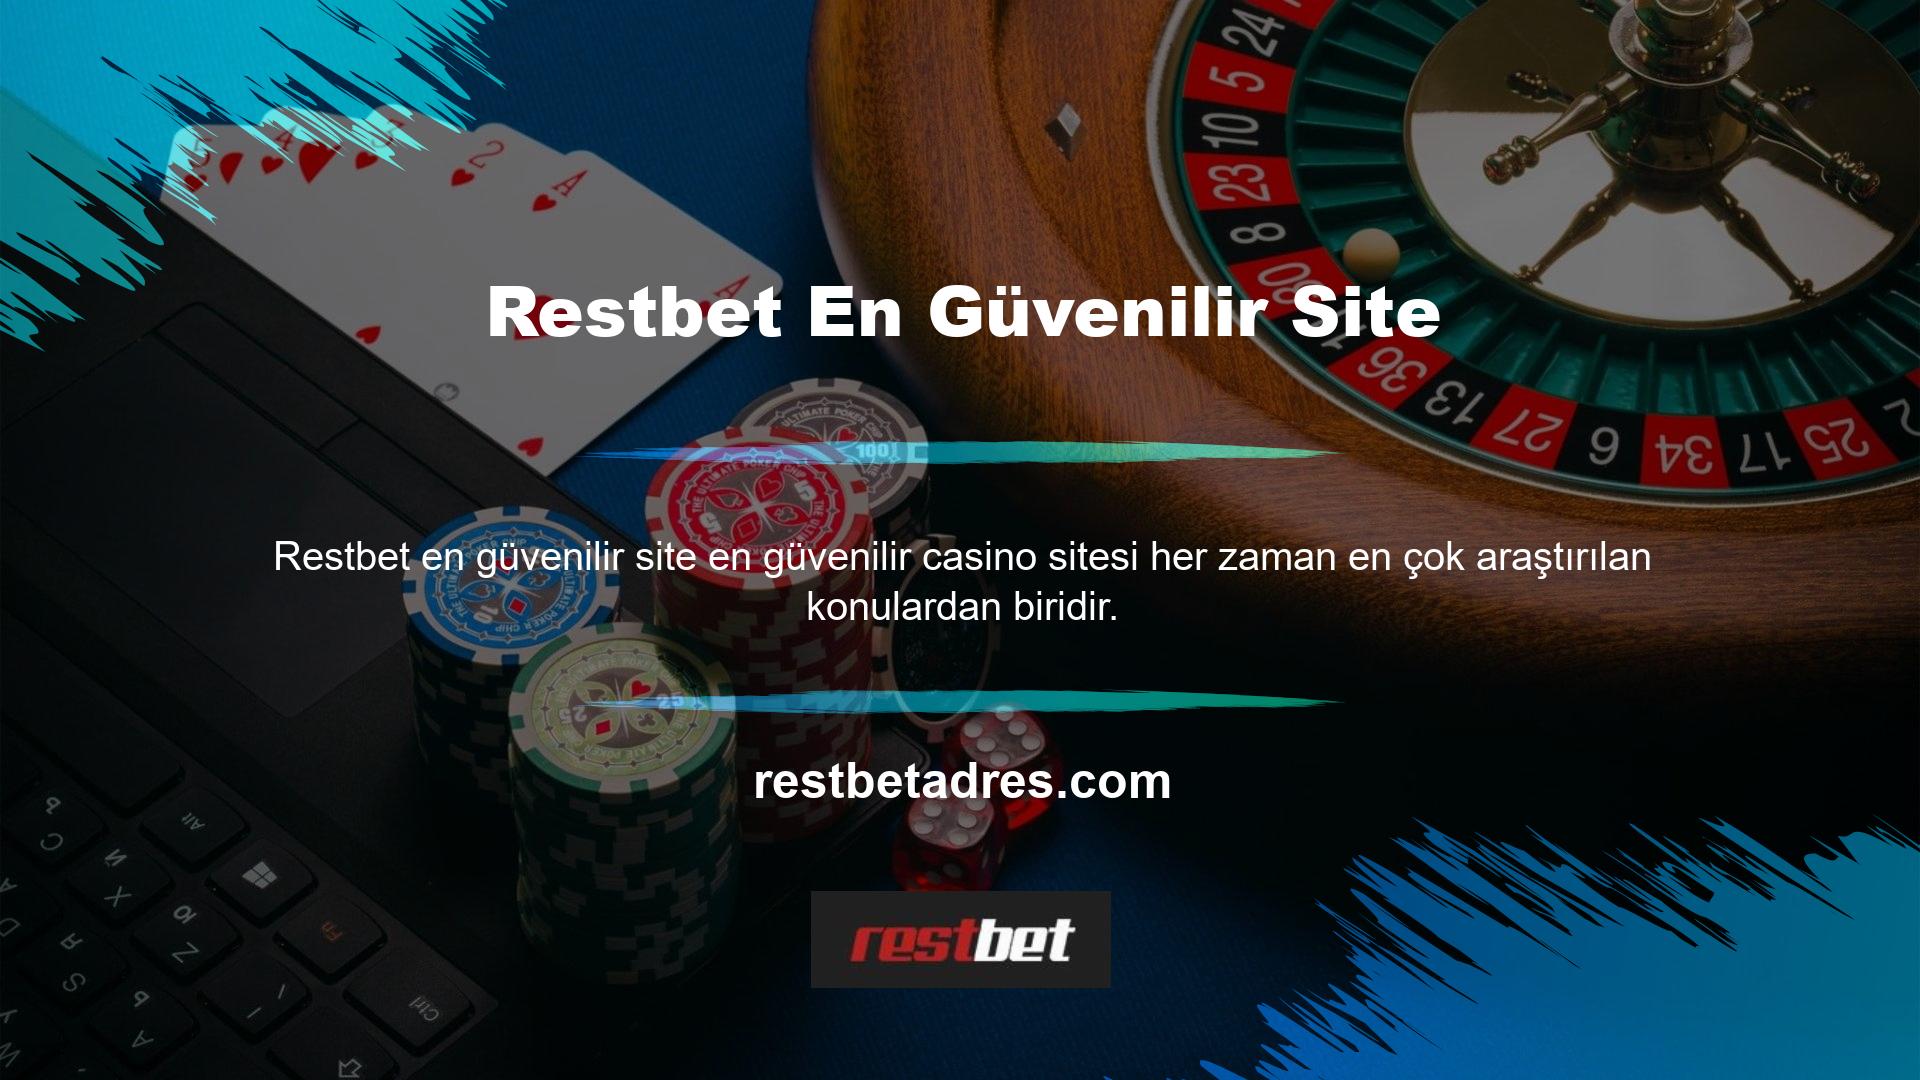 Casino tutkunlarının çevrimiçi pazarda çeşitli casino siteleri bulunmaktadır